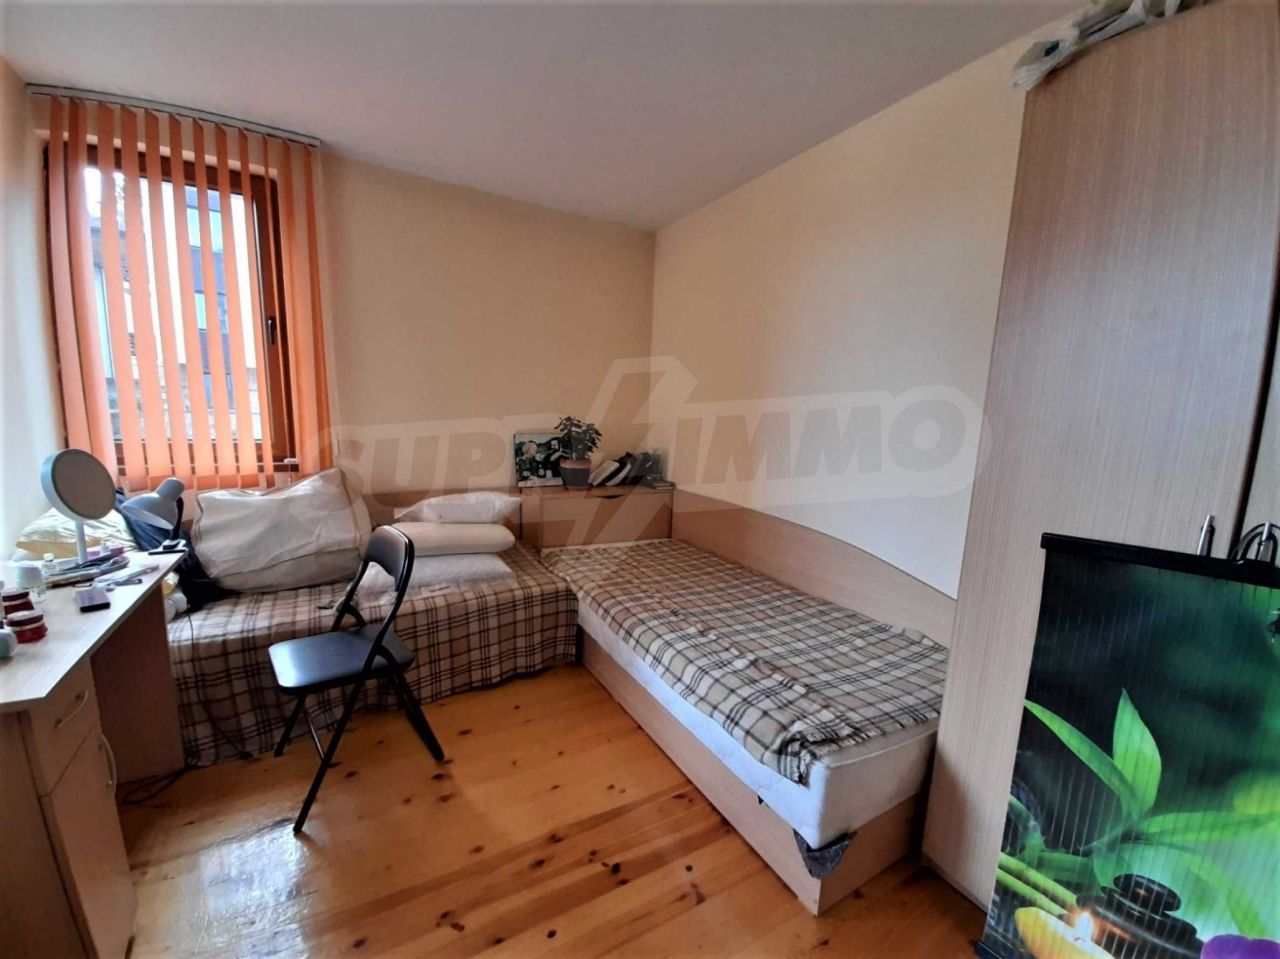 Apartment in Bansko, Bulgaria, 84 sq.m - picture 1